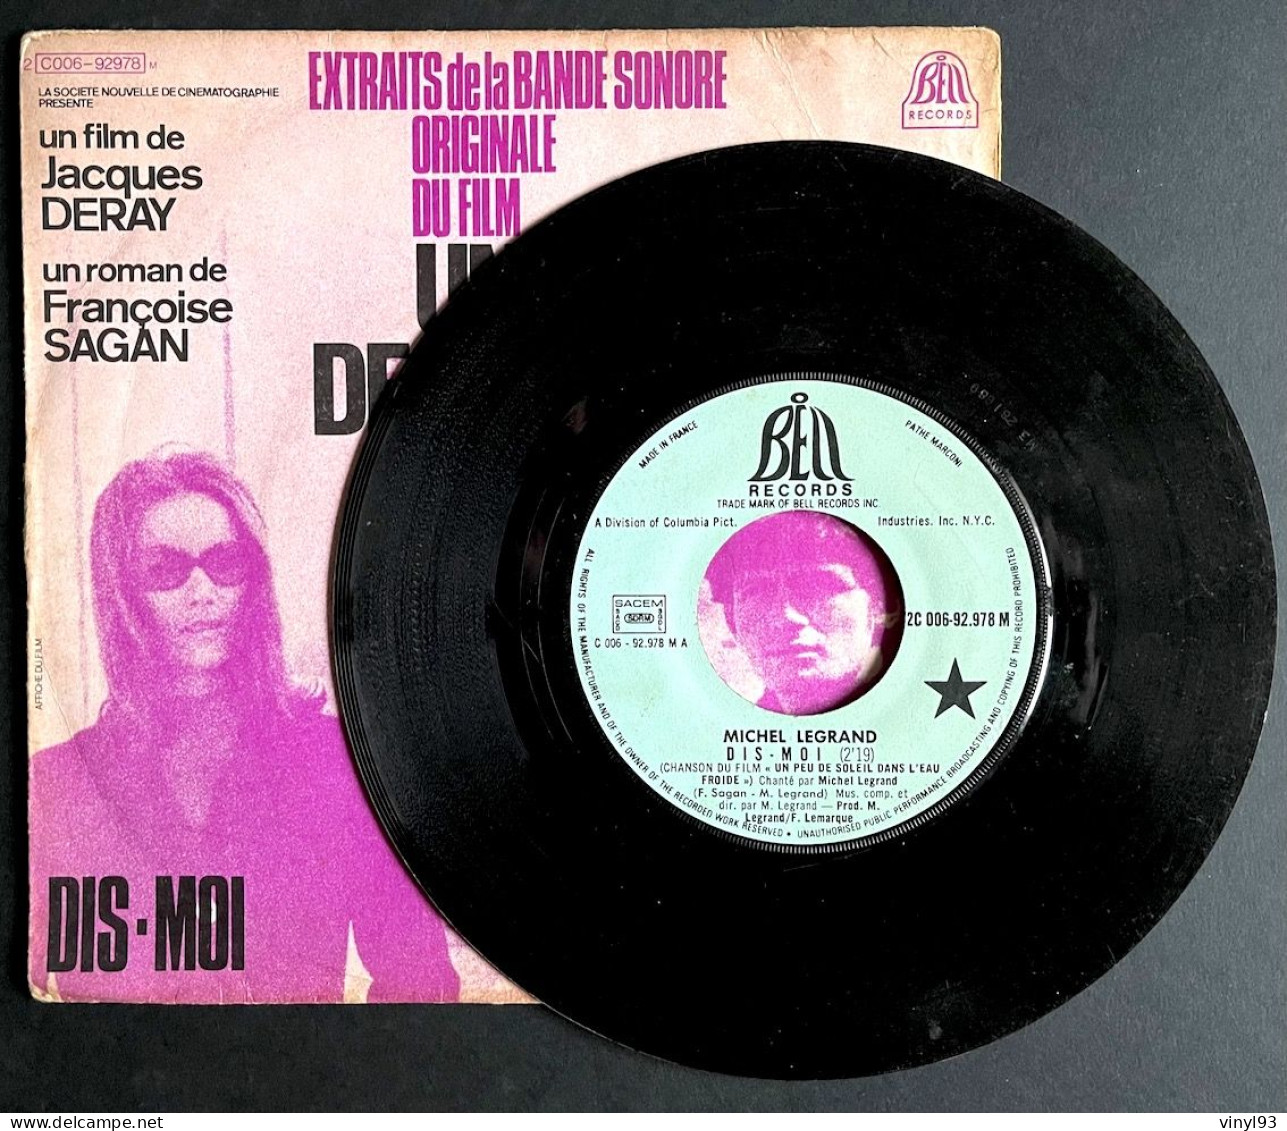 1971 - SP 45T B.O Film De M.Deray "Un Peu De Soleil Dans L'eau Froide" - Musique Michel Legrand - Bell C006 92978 - Soundtracks, Film Music